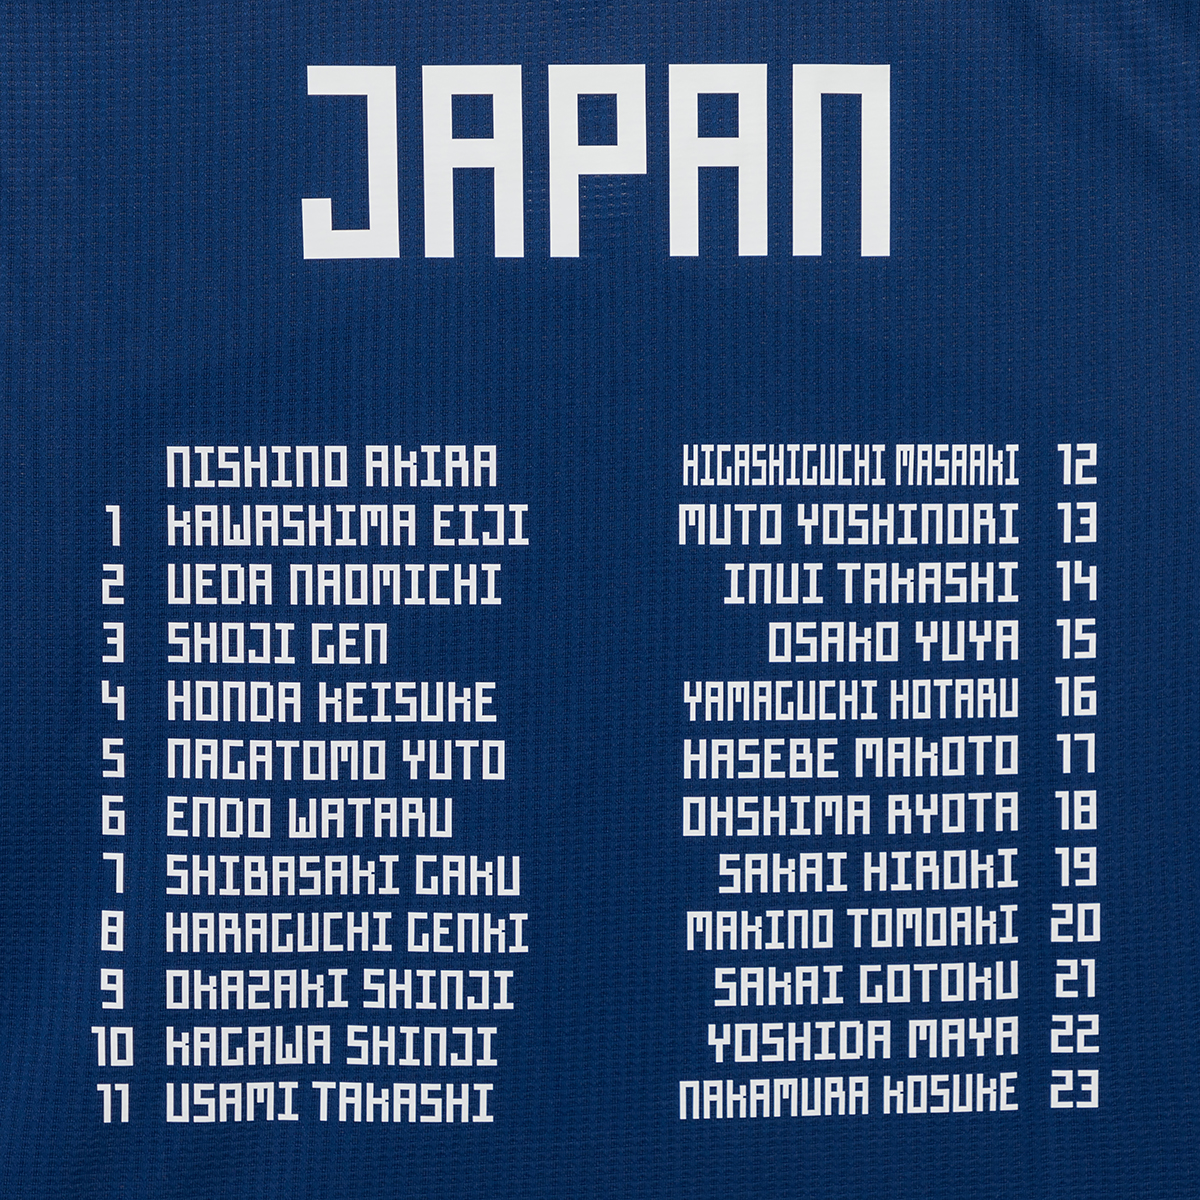 サッカー日本代表の2018 FIFAワールドカップ ロシア™ ベスト16の軌跡を刻んだ『メモリアル勝色ユニフォーム』の販売を開始｜アディダス  ジャパン株式会社のプレスリリース